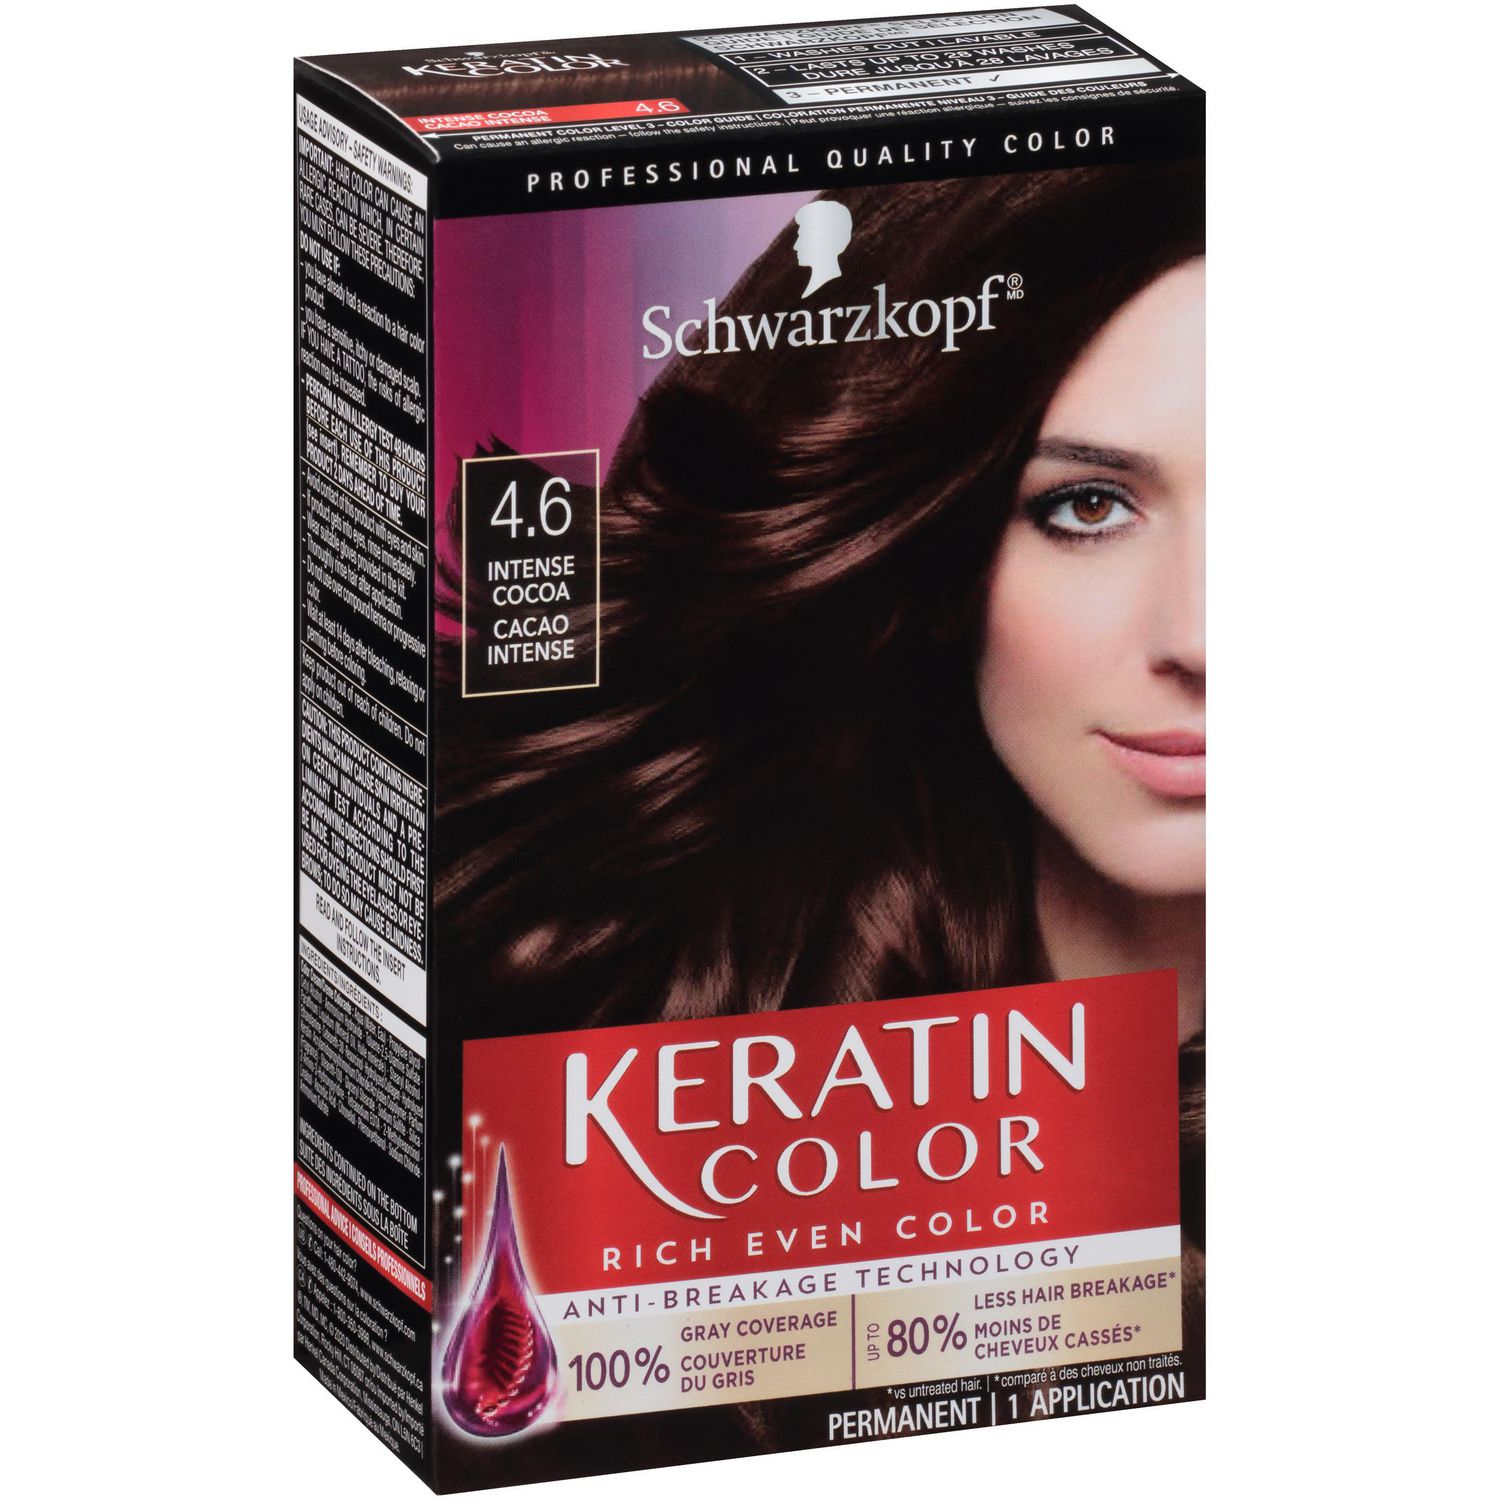 Schwarzkopf Keratin Color Permanent Hair Color Cream,  Berry Brown |  Walmart Canada